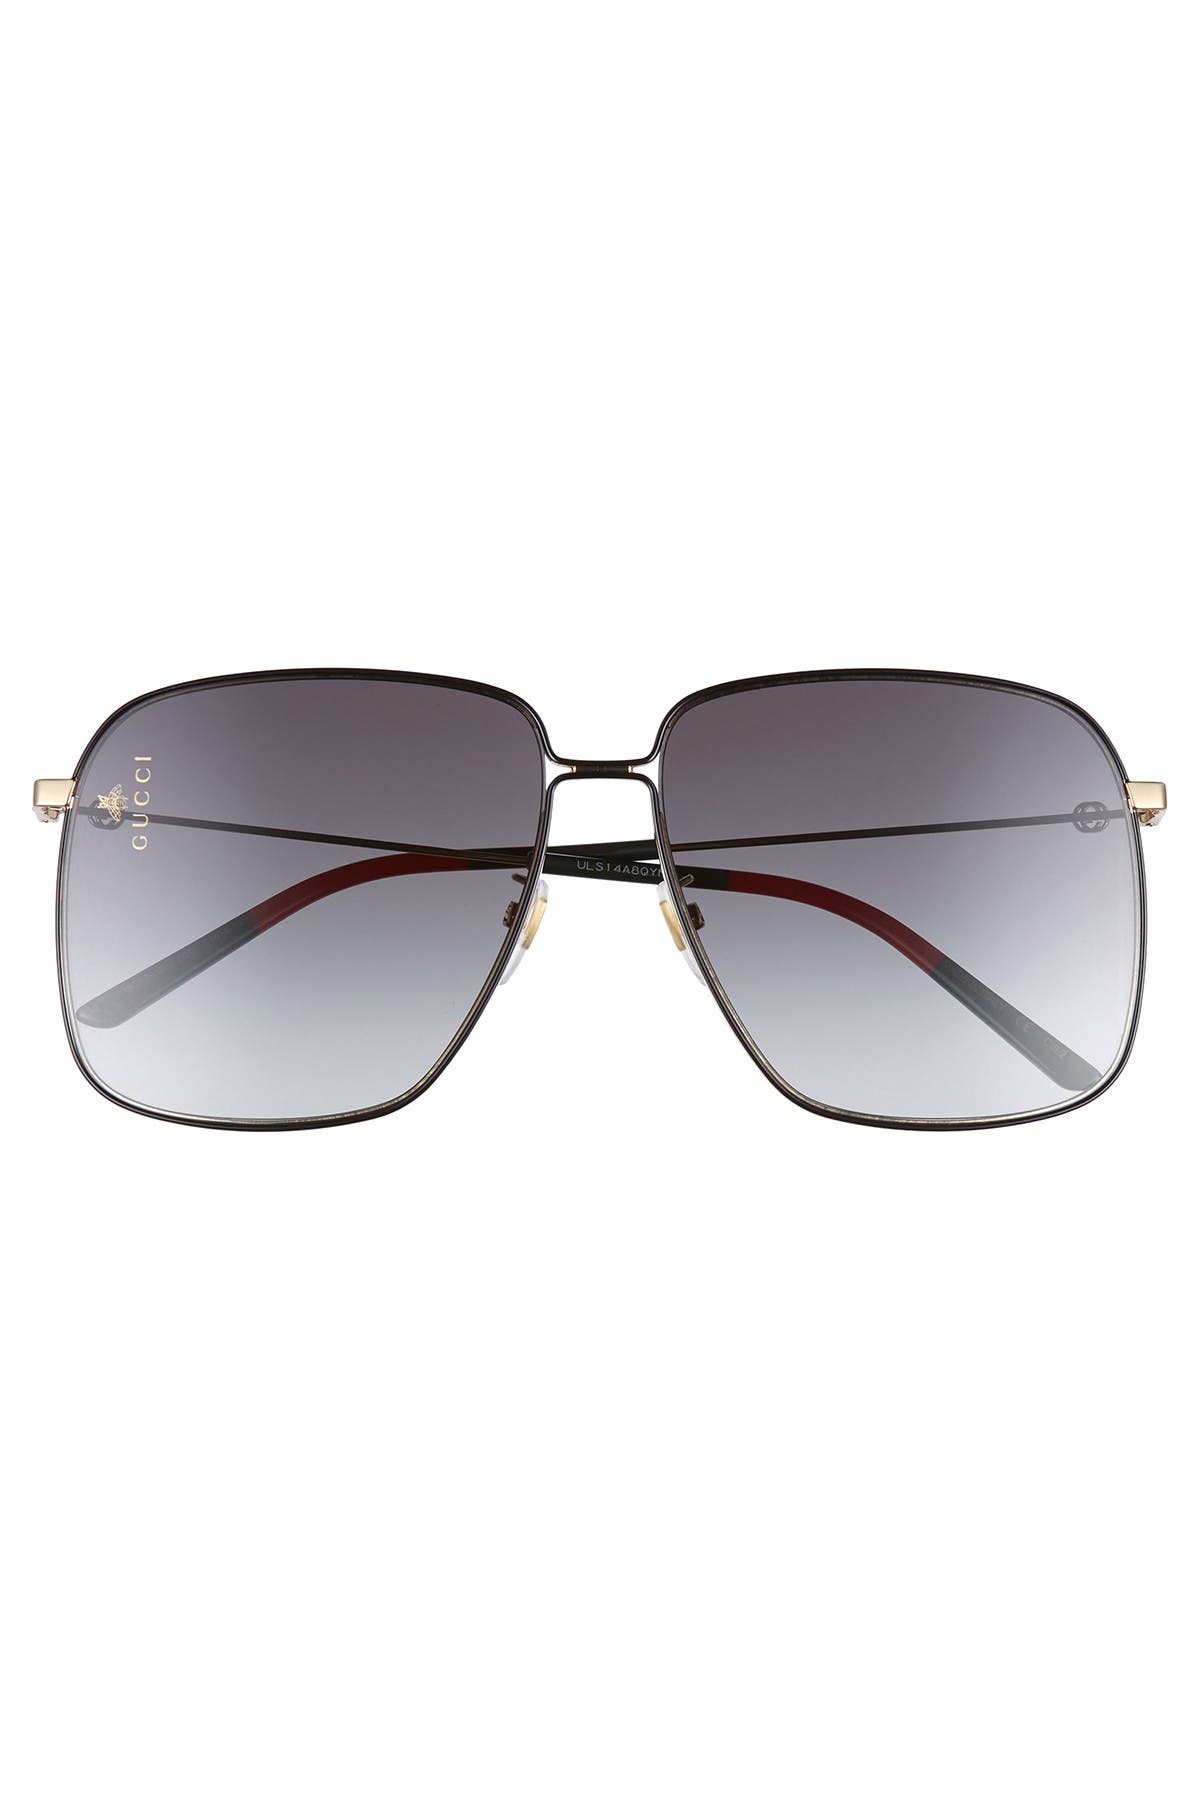 gucci 61mm square sunglasses